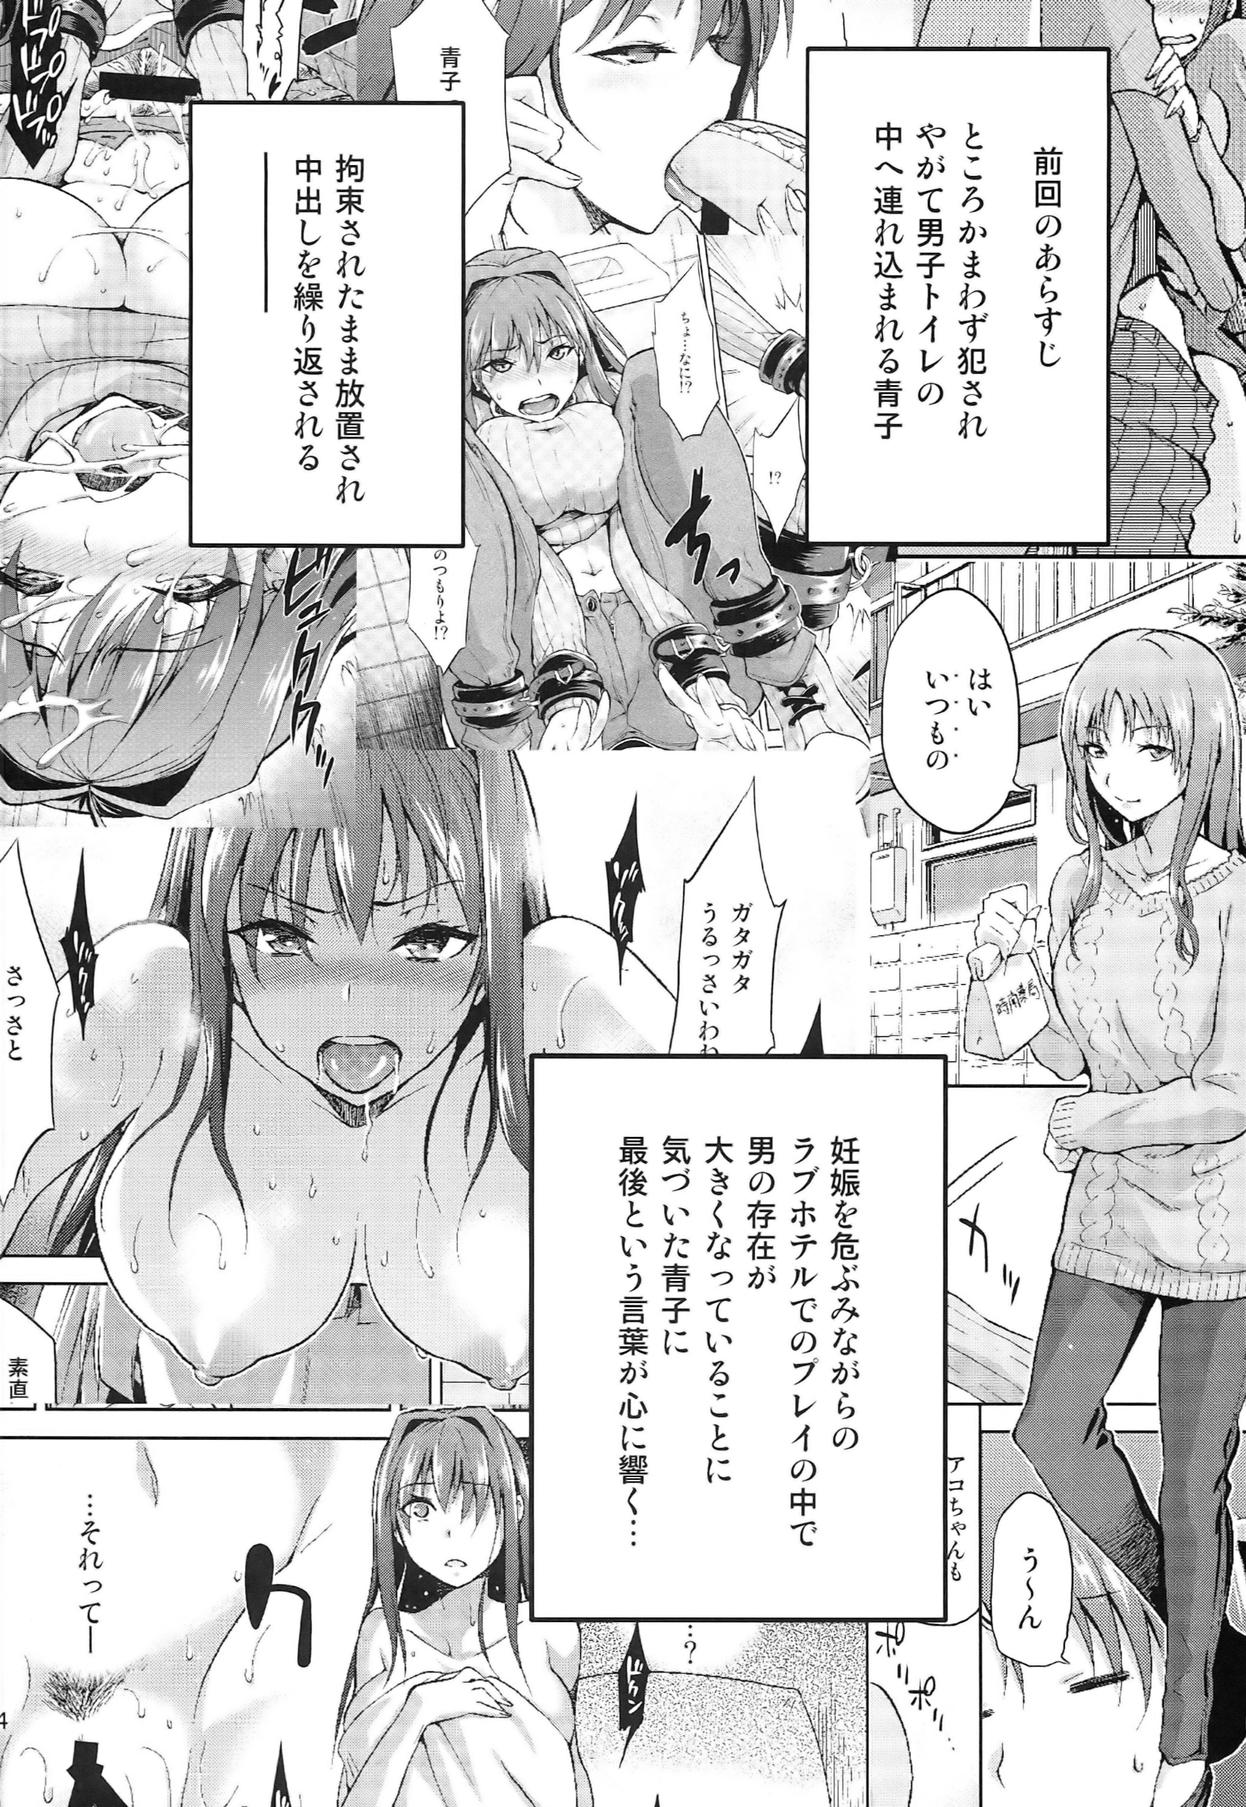 Mamando Aoko BLUE5 Zenpen - Mahou tsukai no yoru Mujer - Page 4